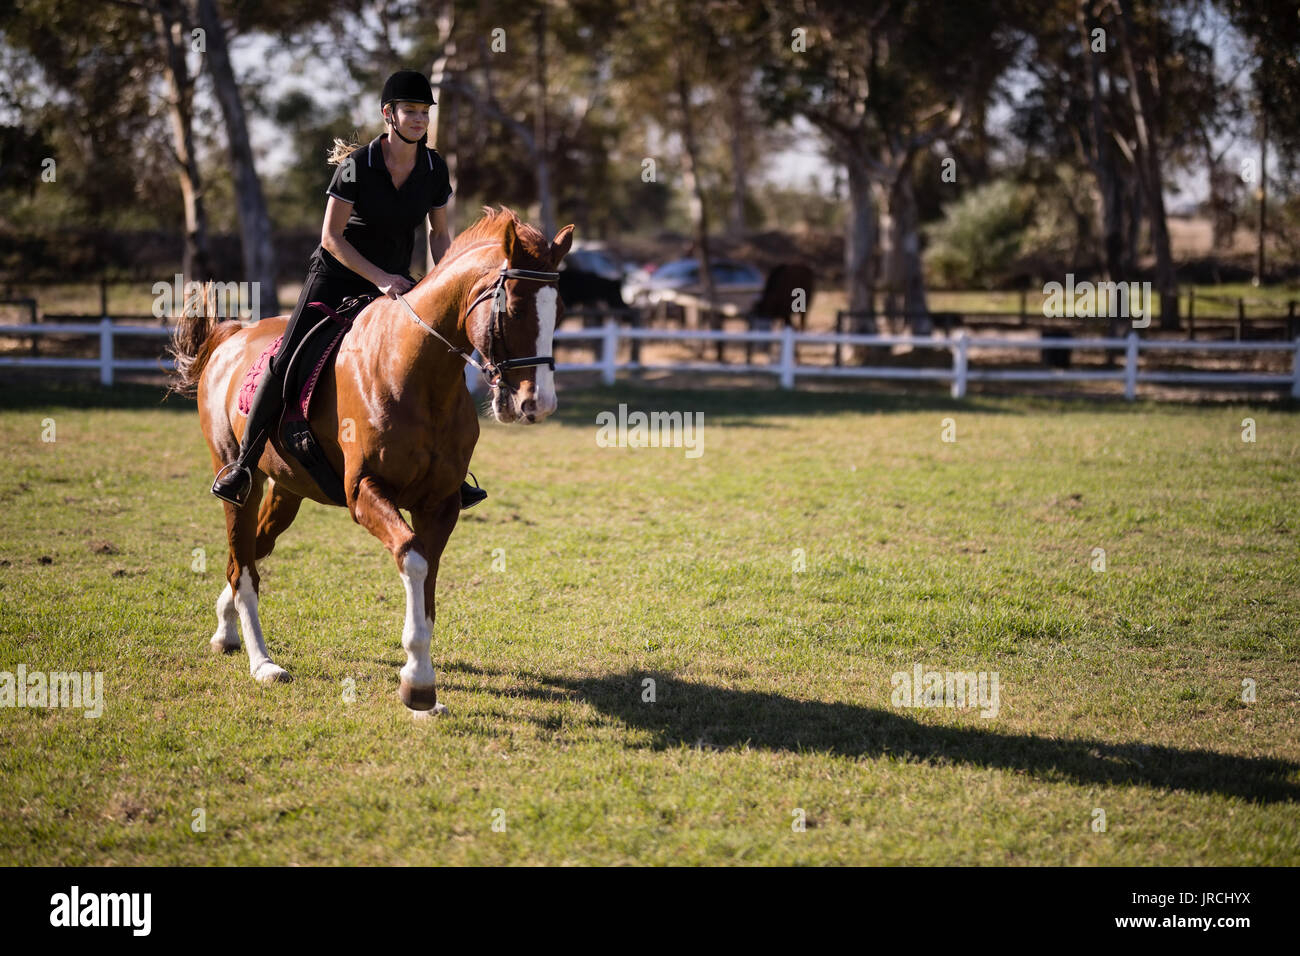 Weibliche jockey Reiten an Equestrian Center Stockfoto